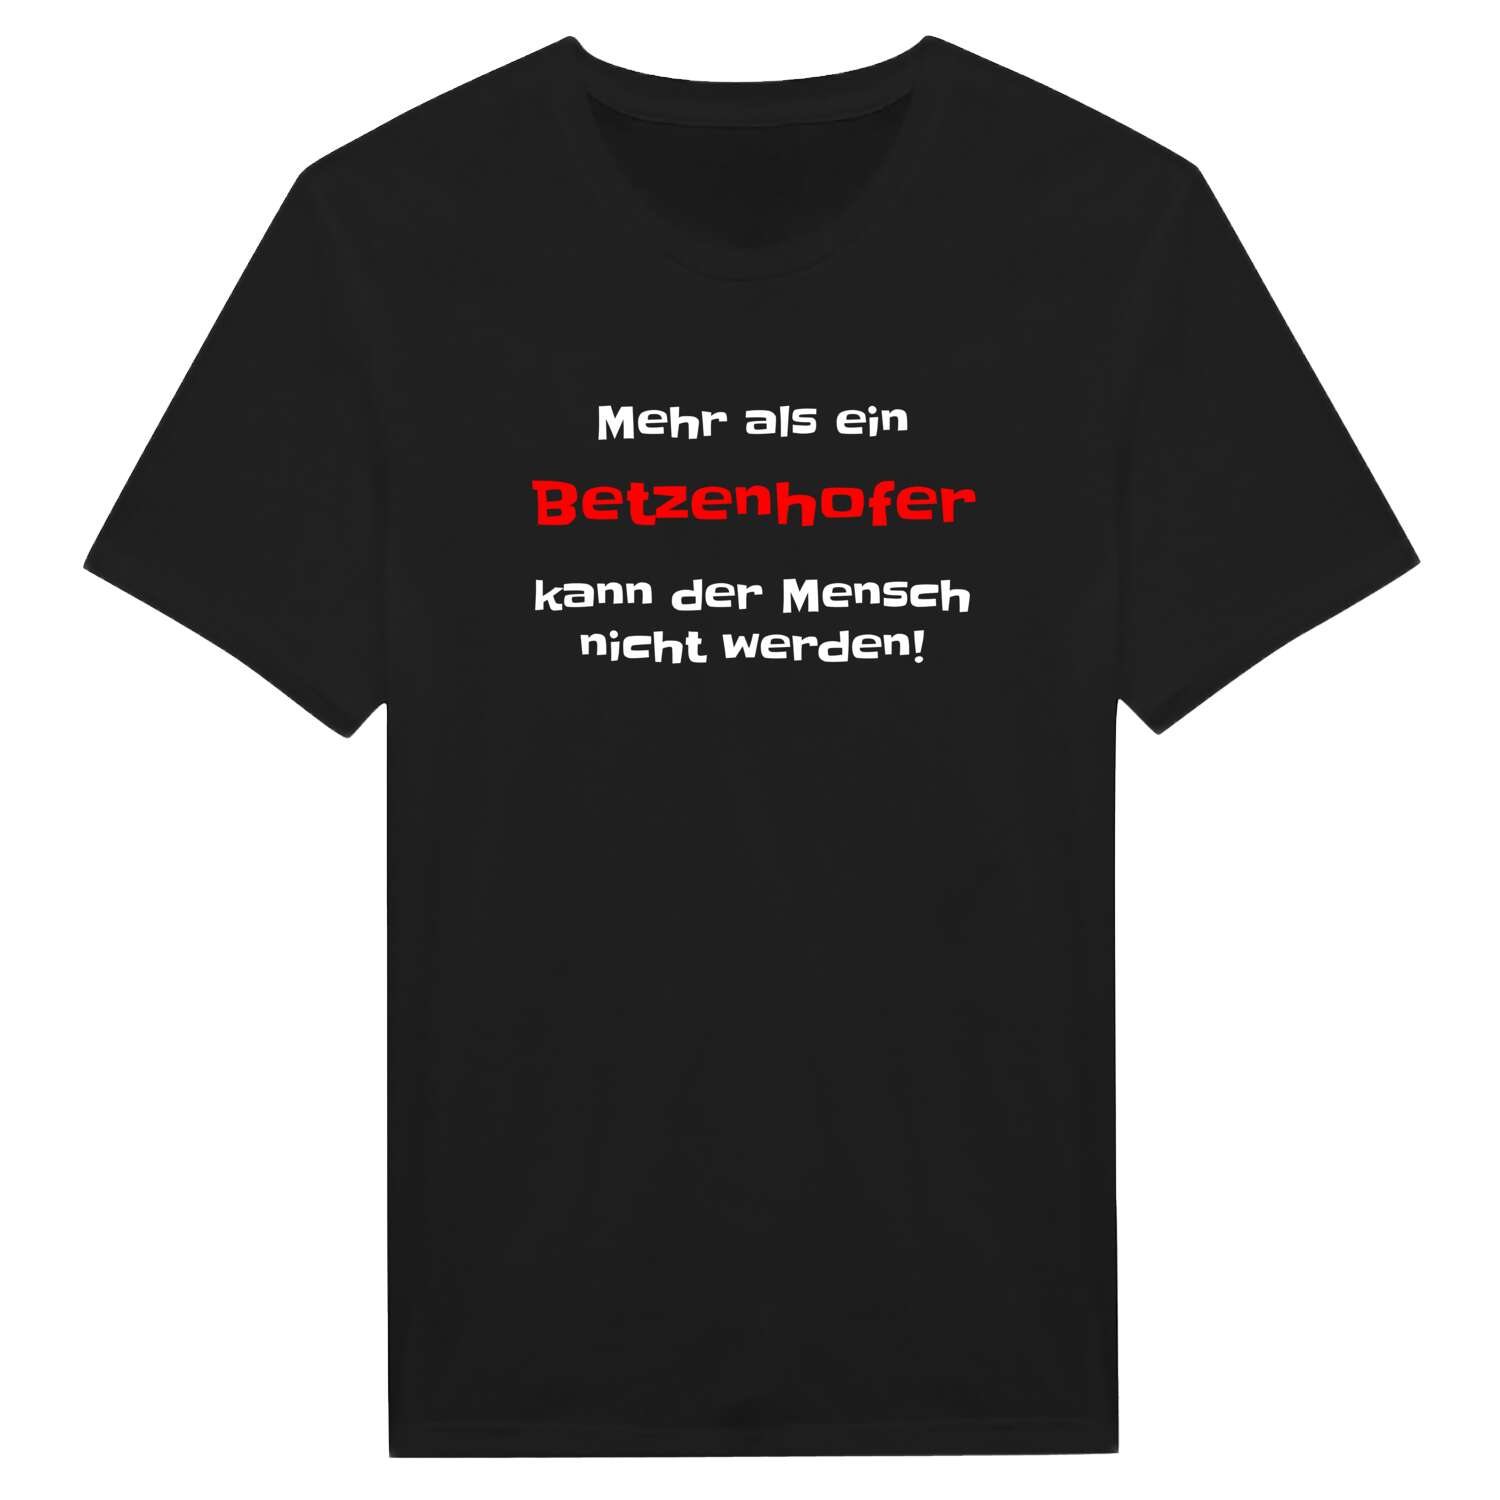 Betzenhof T-Shirt »Mehr als ein«